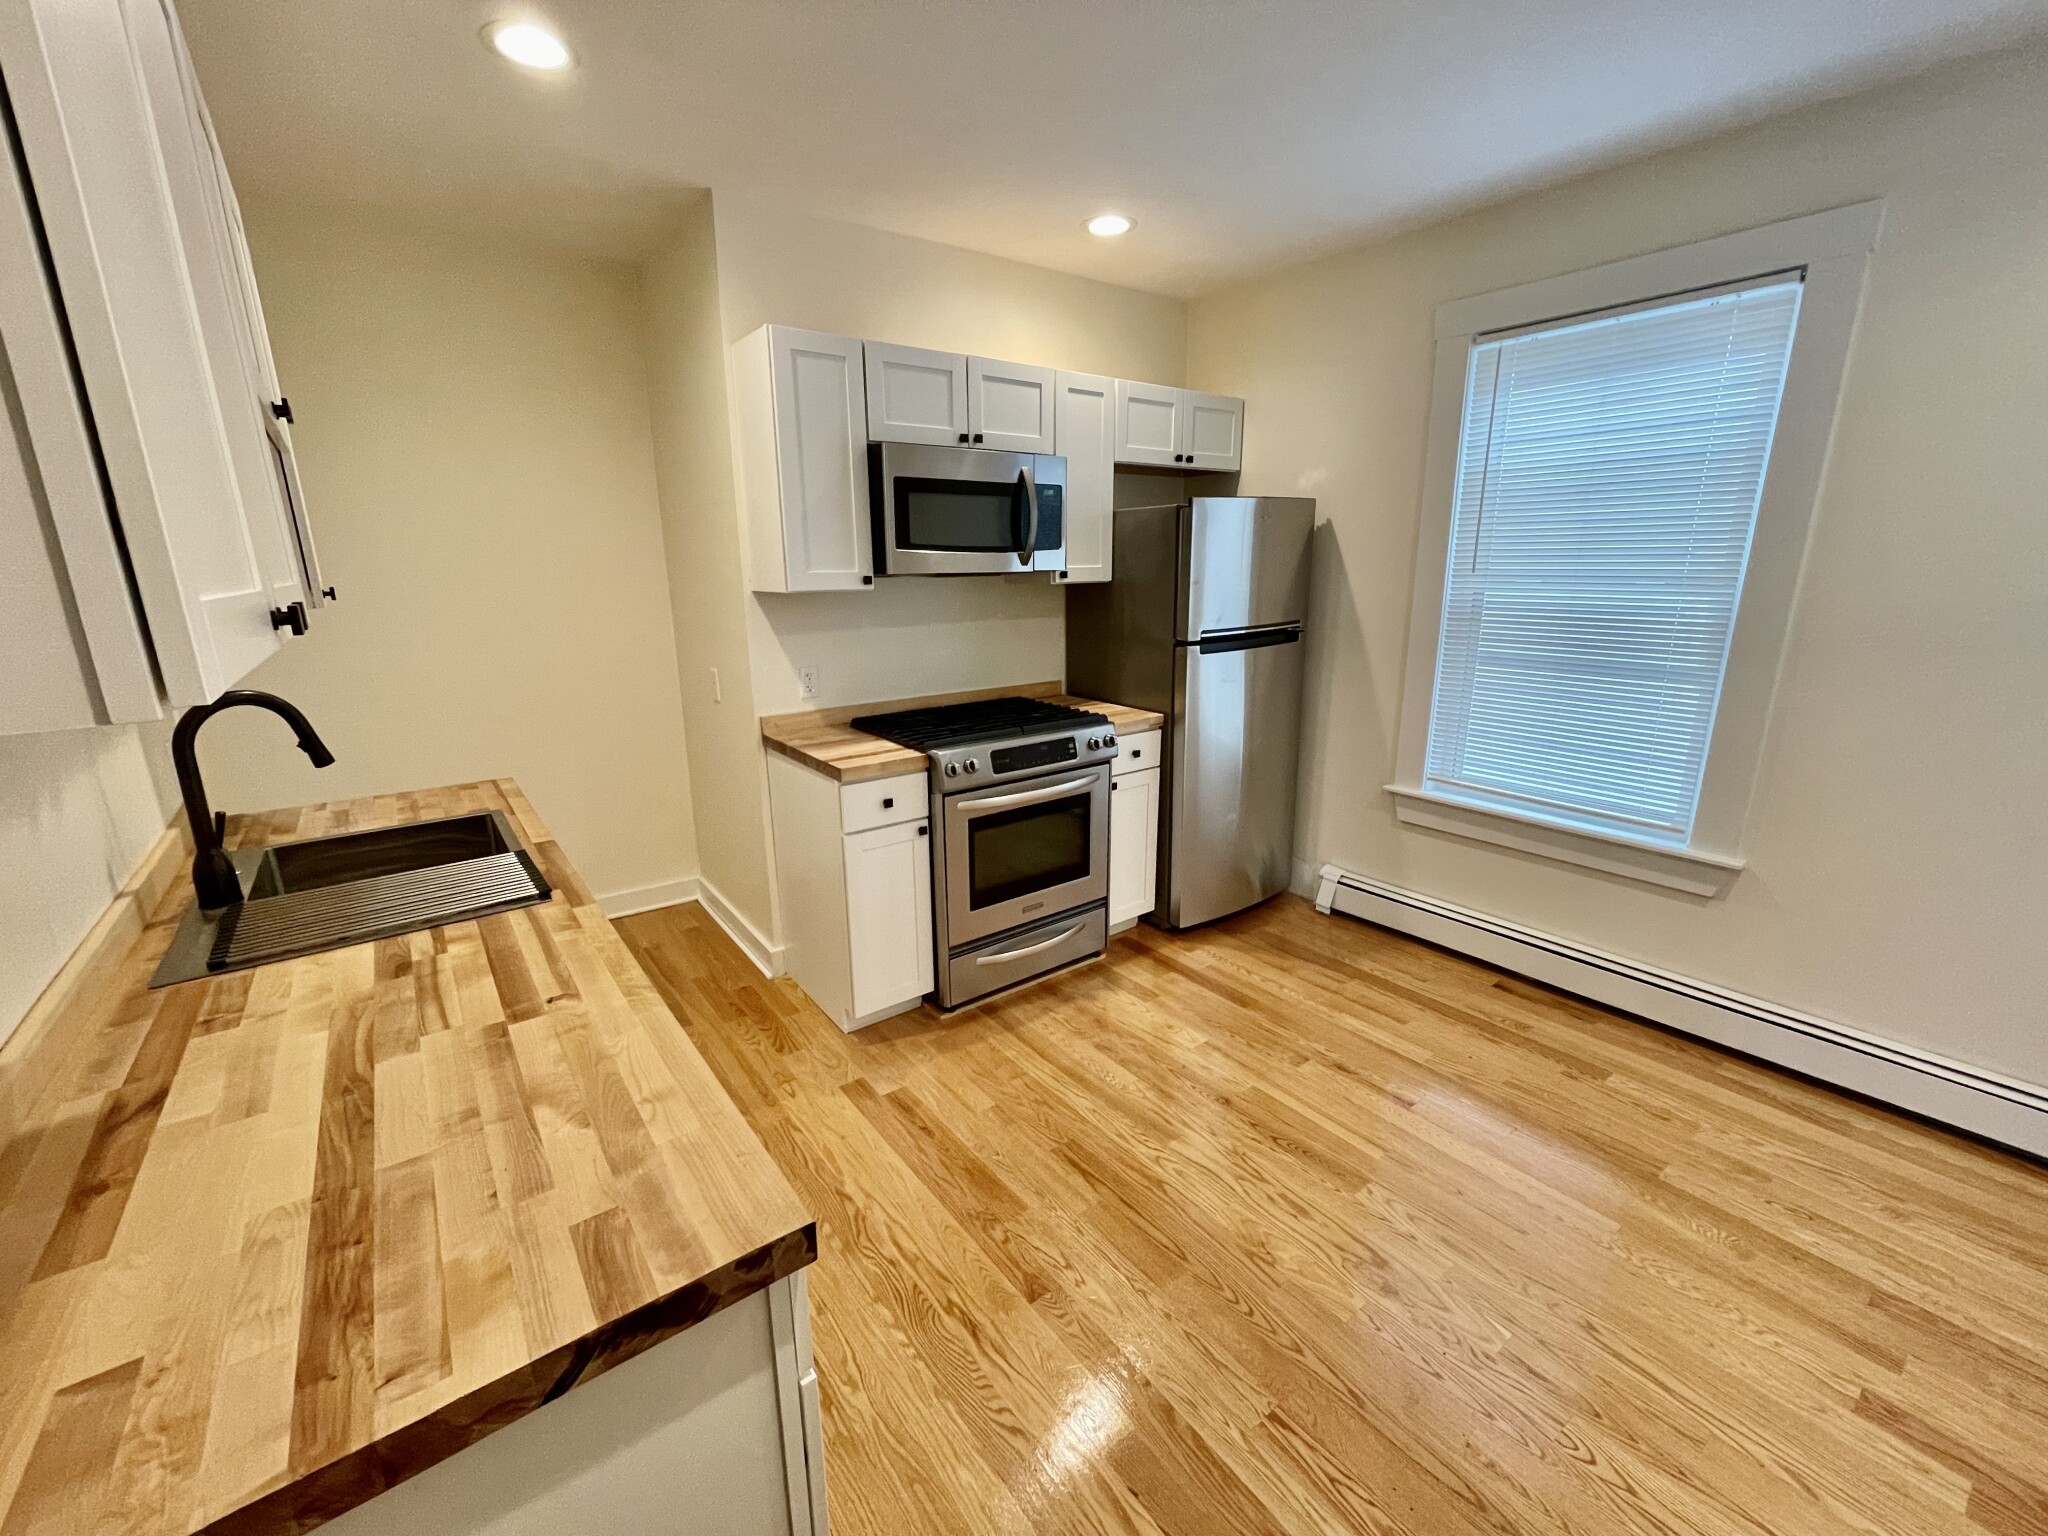 Photos of apartment on Goldsmith St.,Boston MA 02139